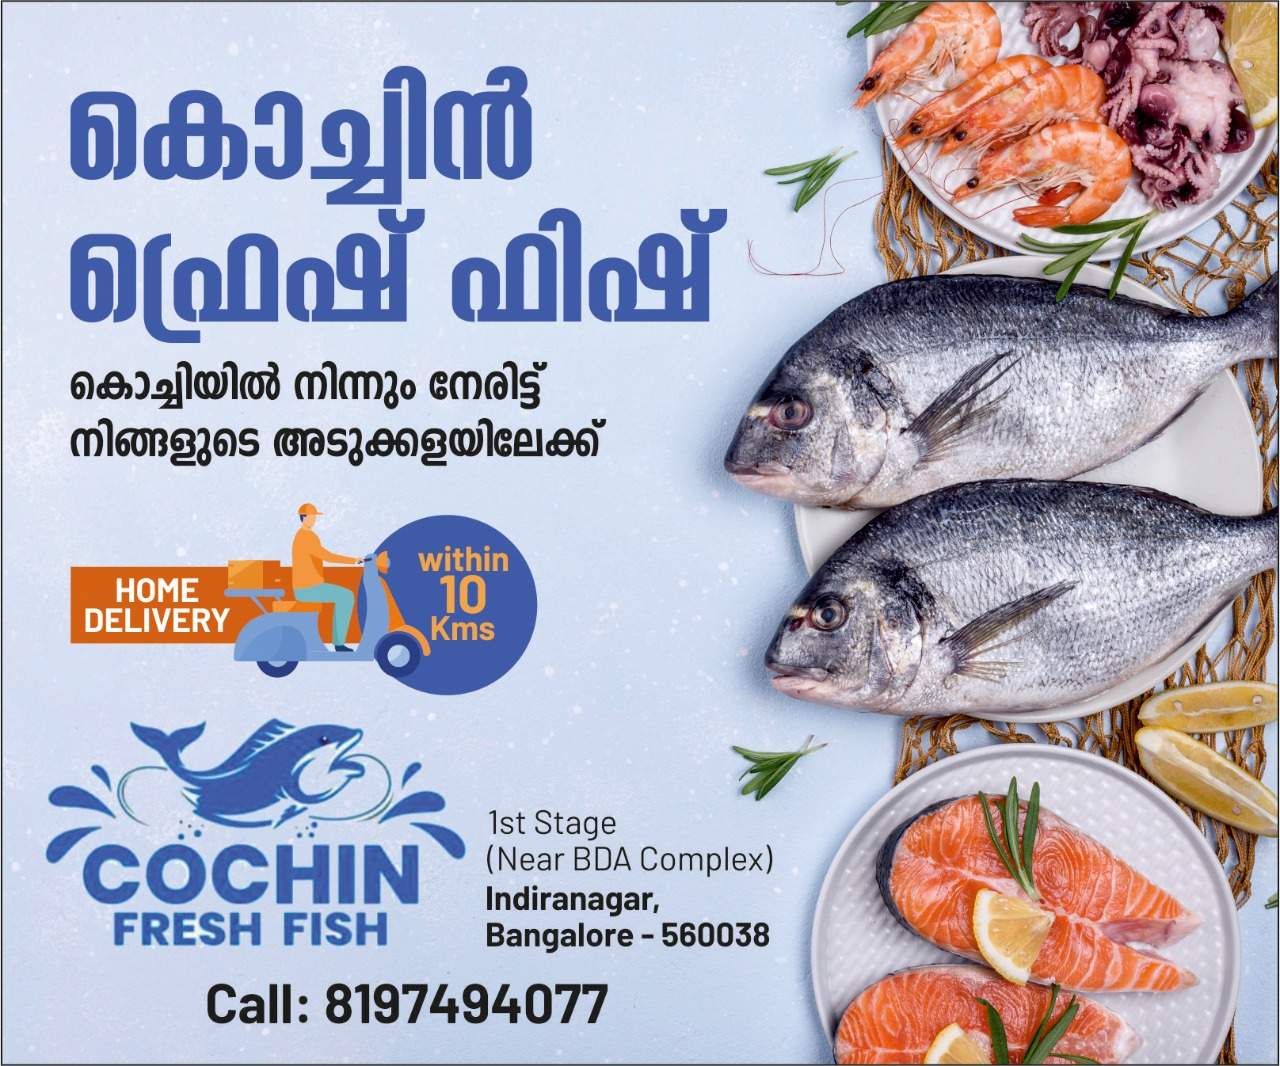 Right Sidebar 03 Banner 300 x 250 Cochin Fresh Fish